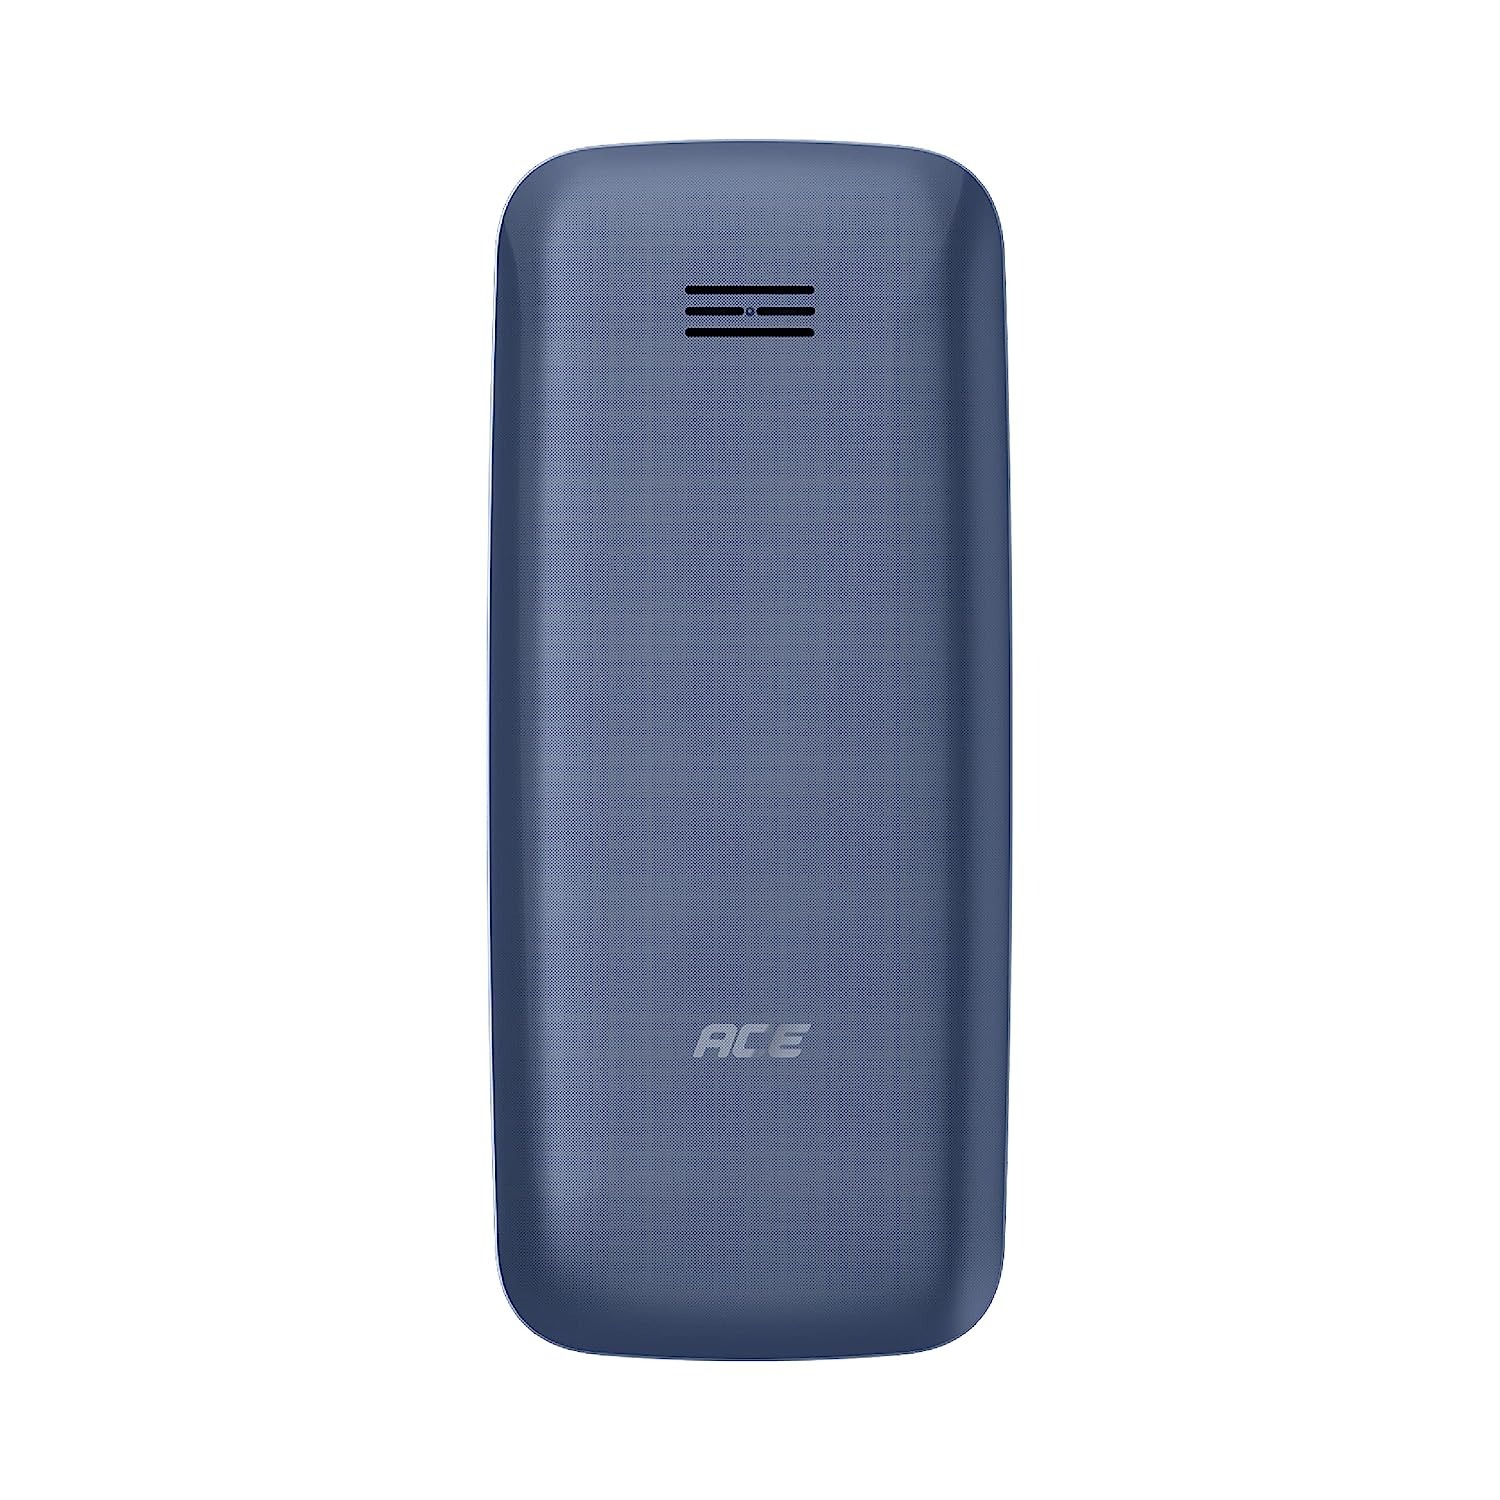 Itel Ace 2 Deep blue keypad Mobile phone - deep blue